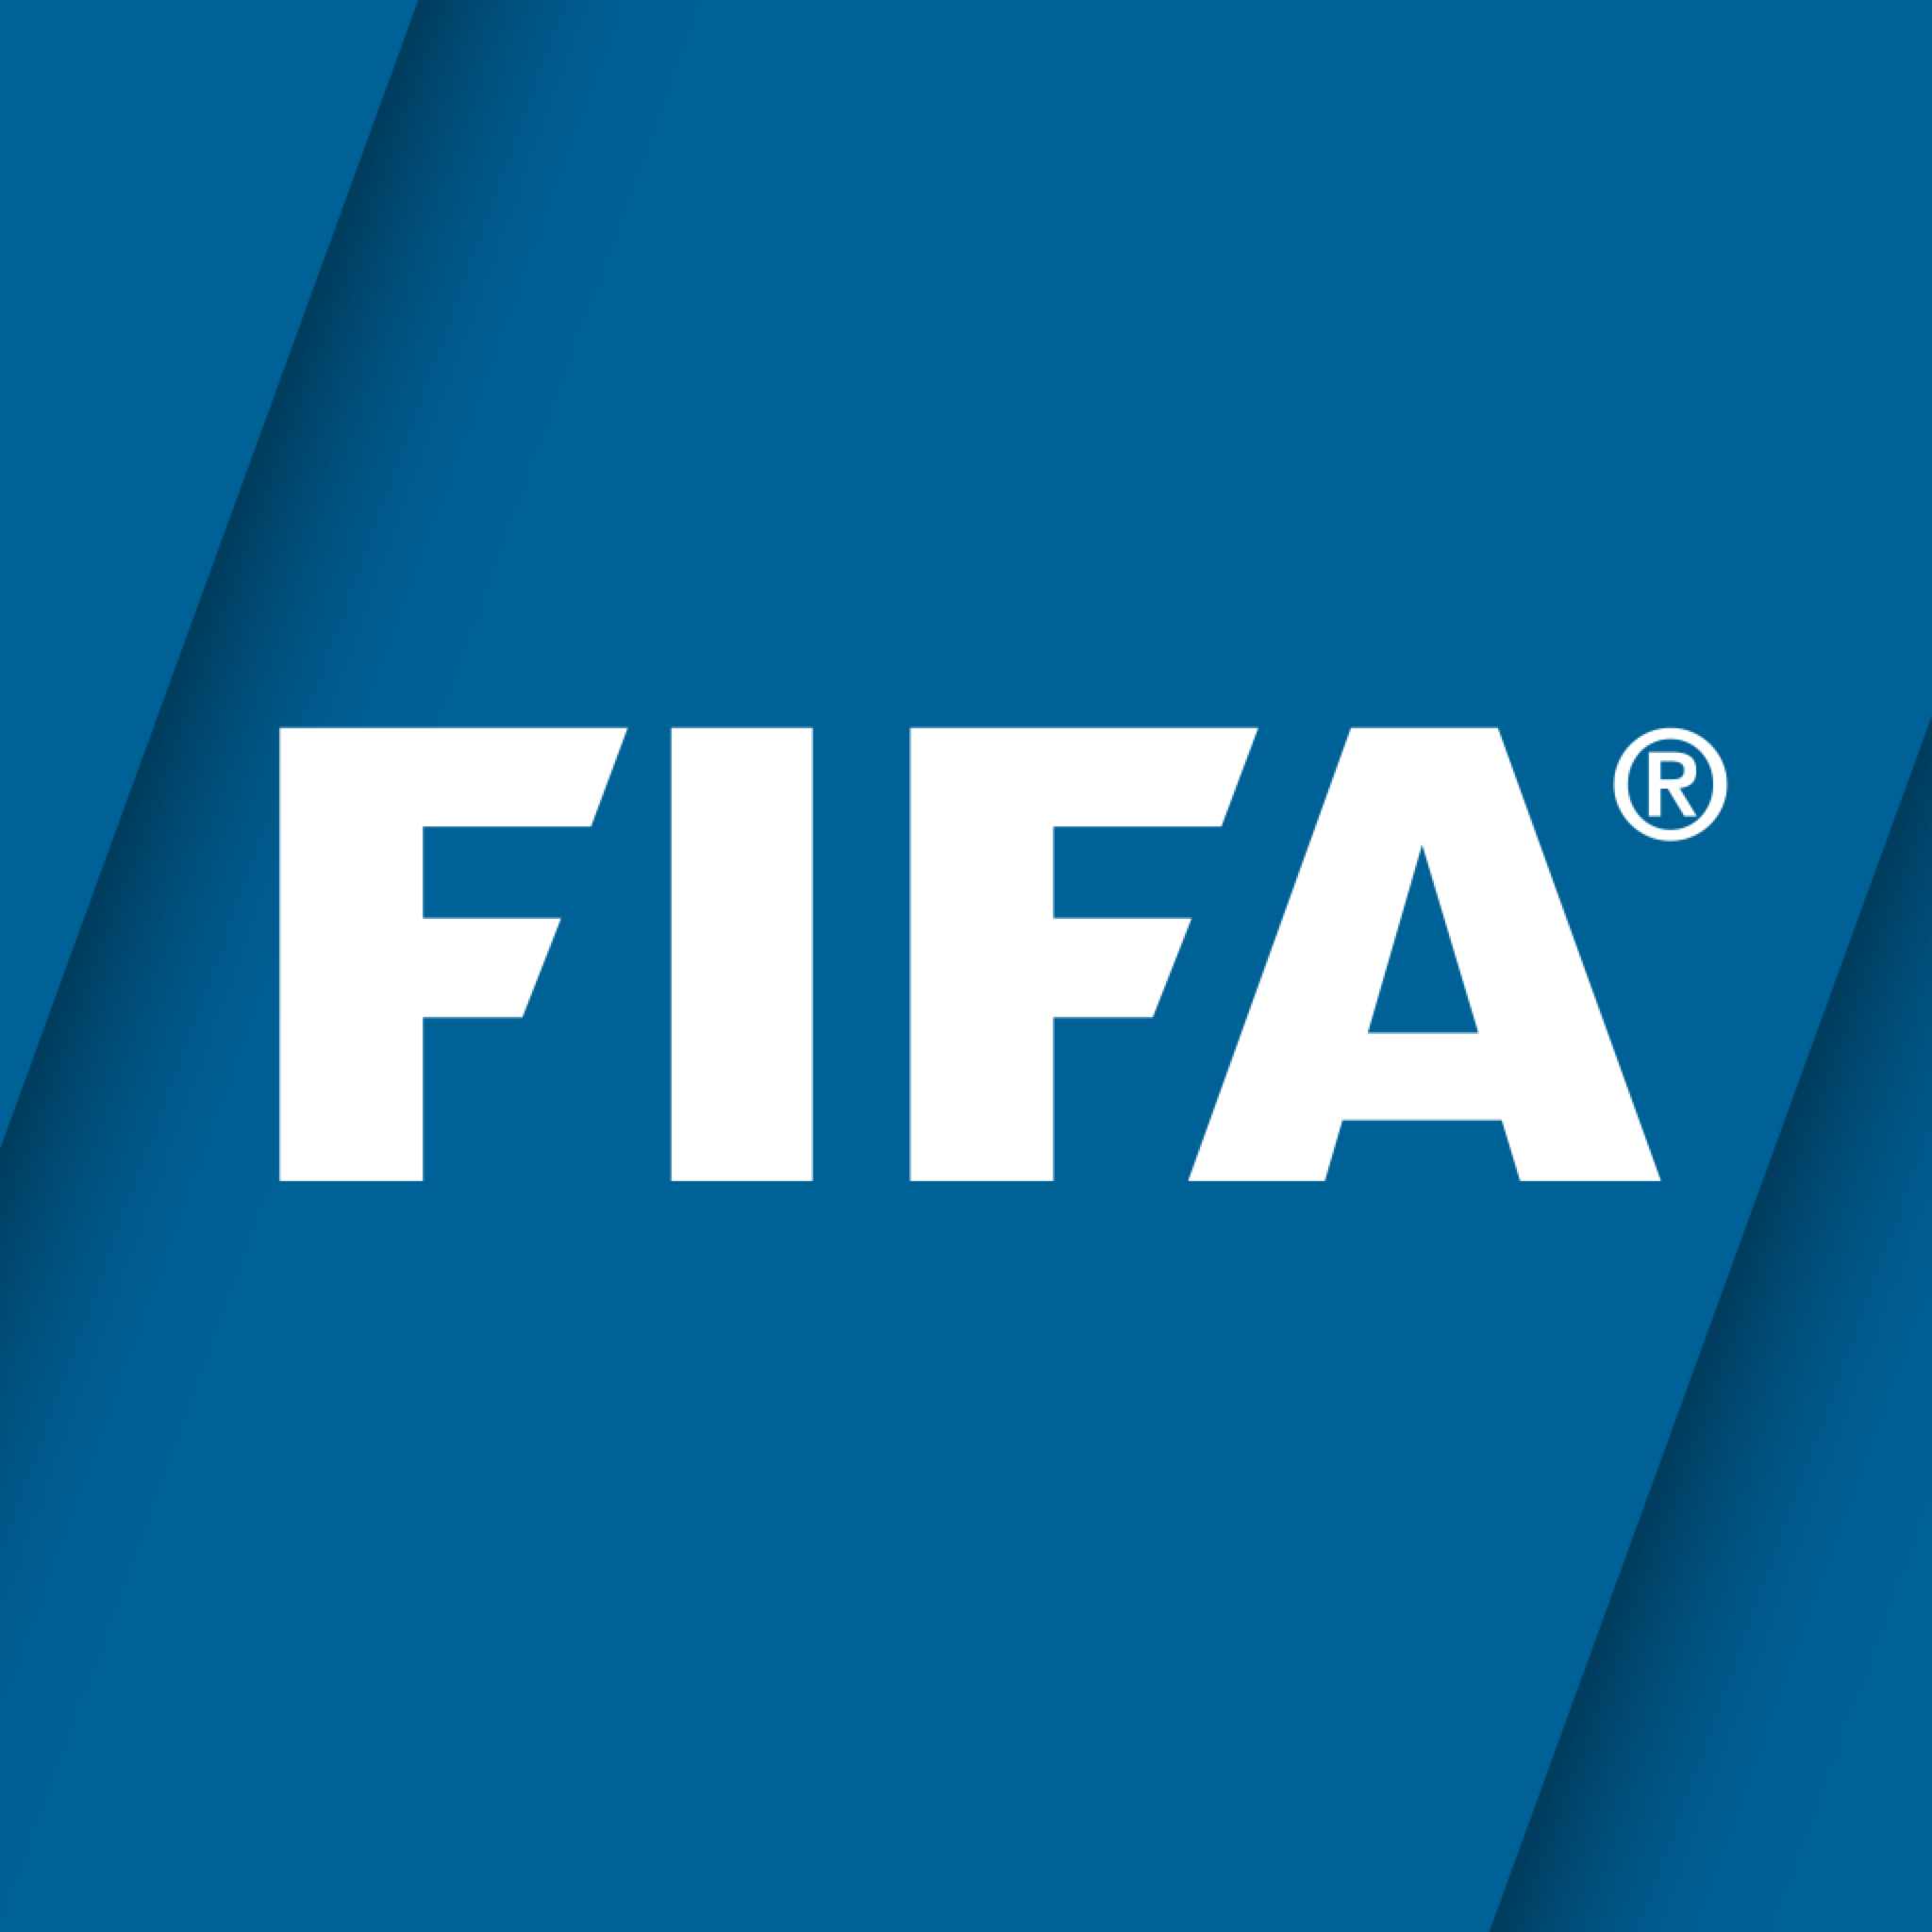 FIFA Official App: サッカーの試合結果やニュースはこれ1つで全部OK。W杯前にダウンロードだ! 無料。